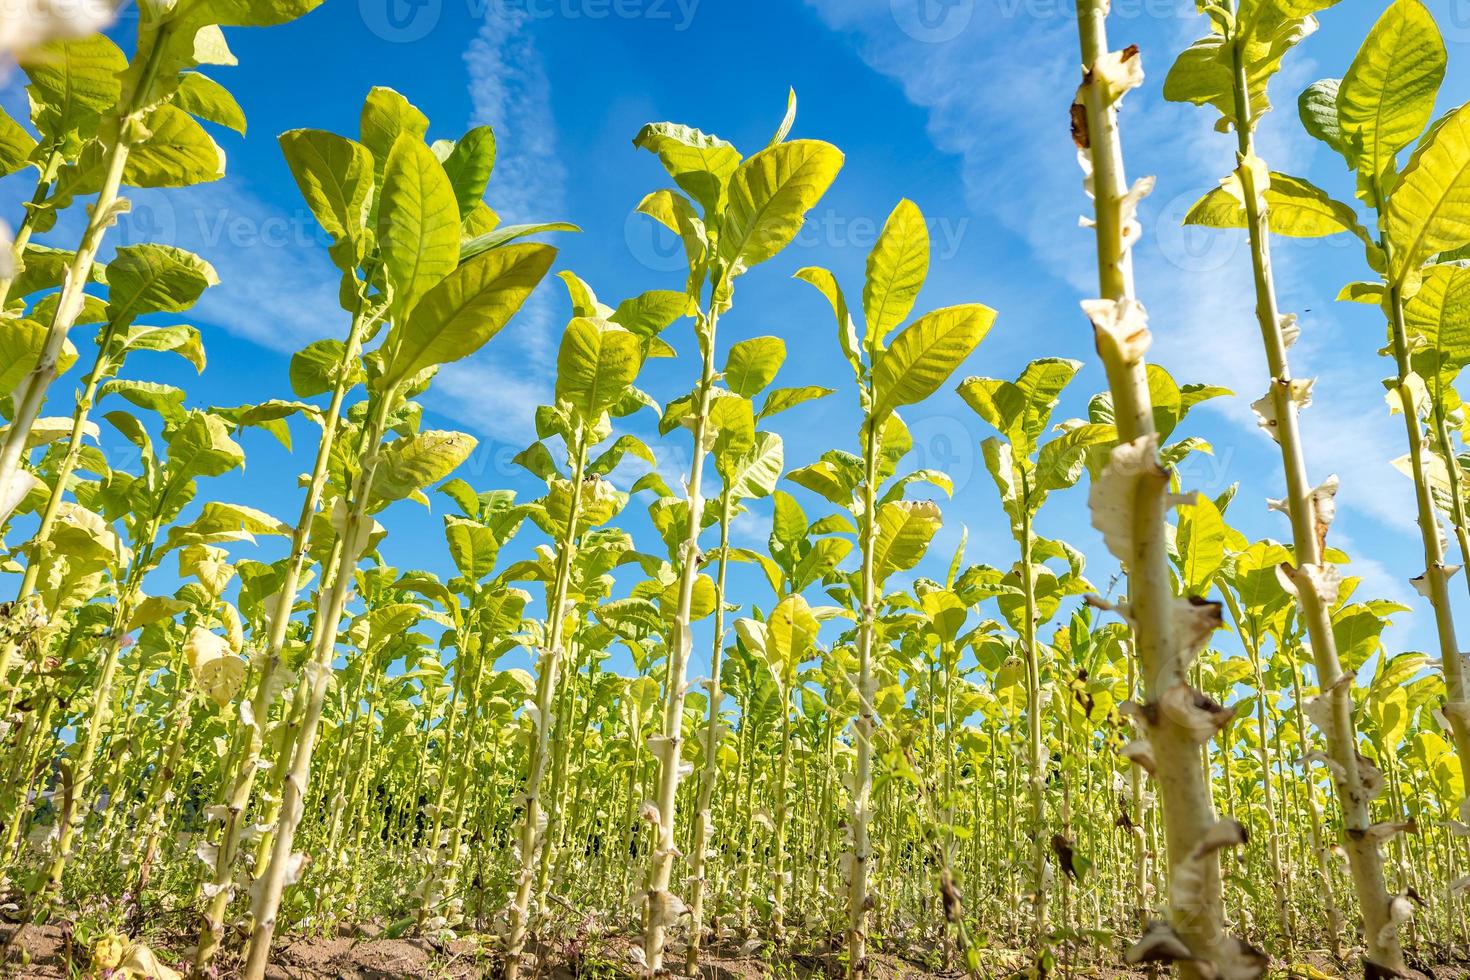 plantación de campo de tabaco bajo un cielo azul con grandes hojas verdes foto